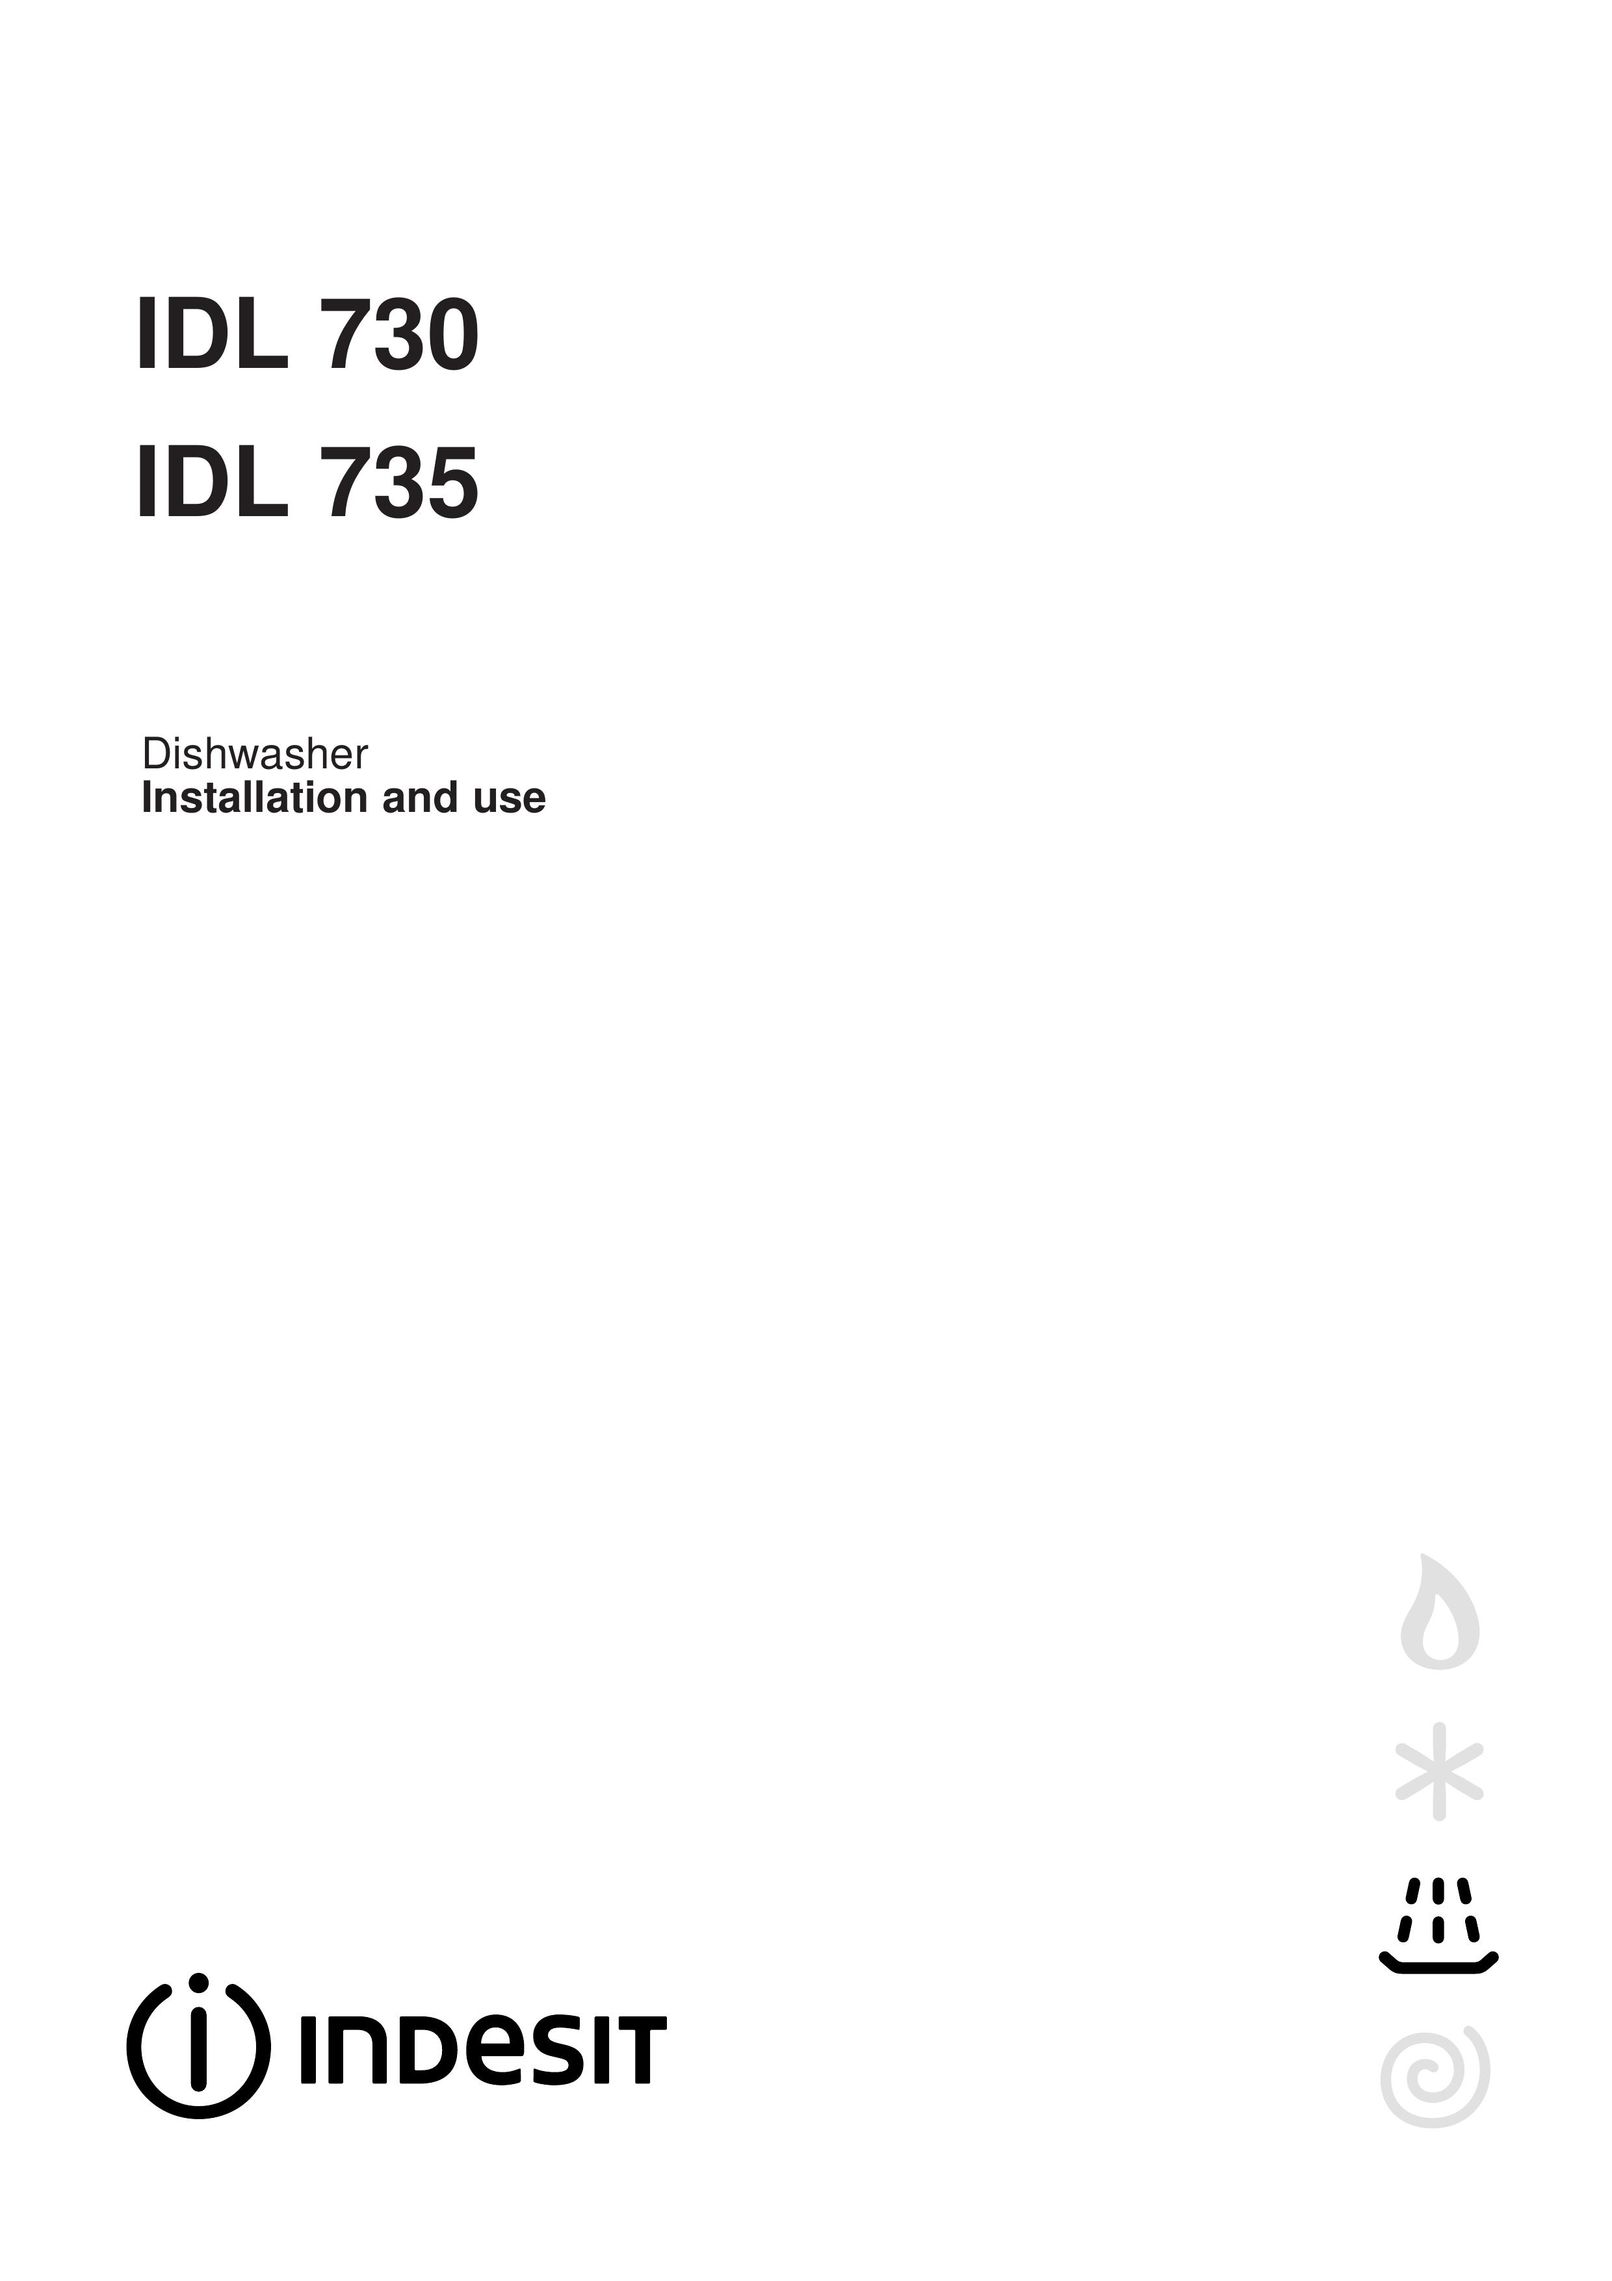 Indesit IDL 730 Dishwasher User Manual